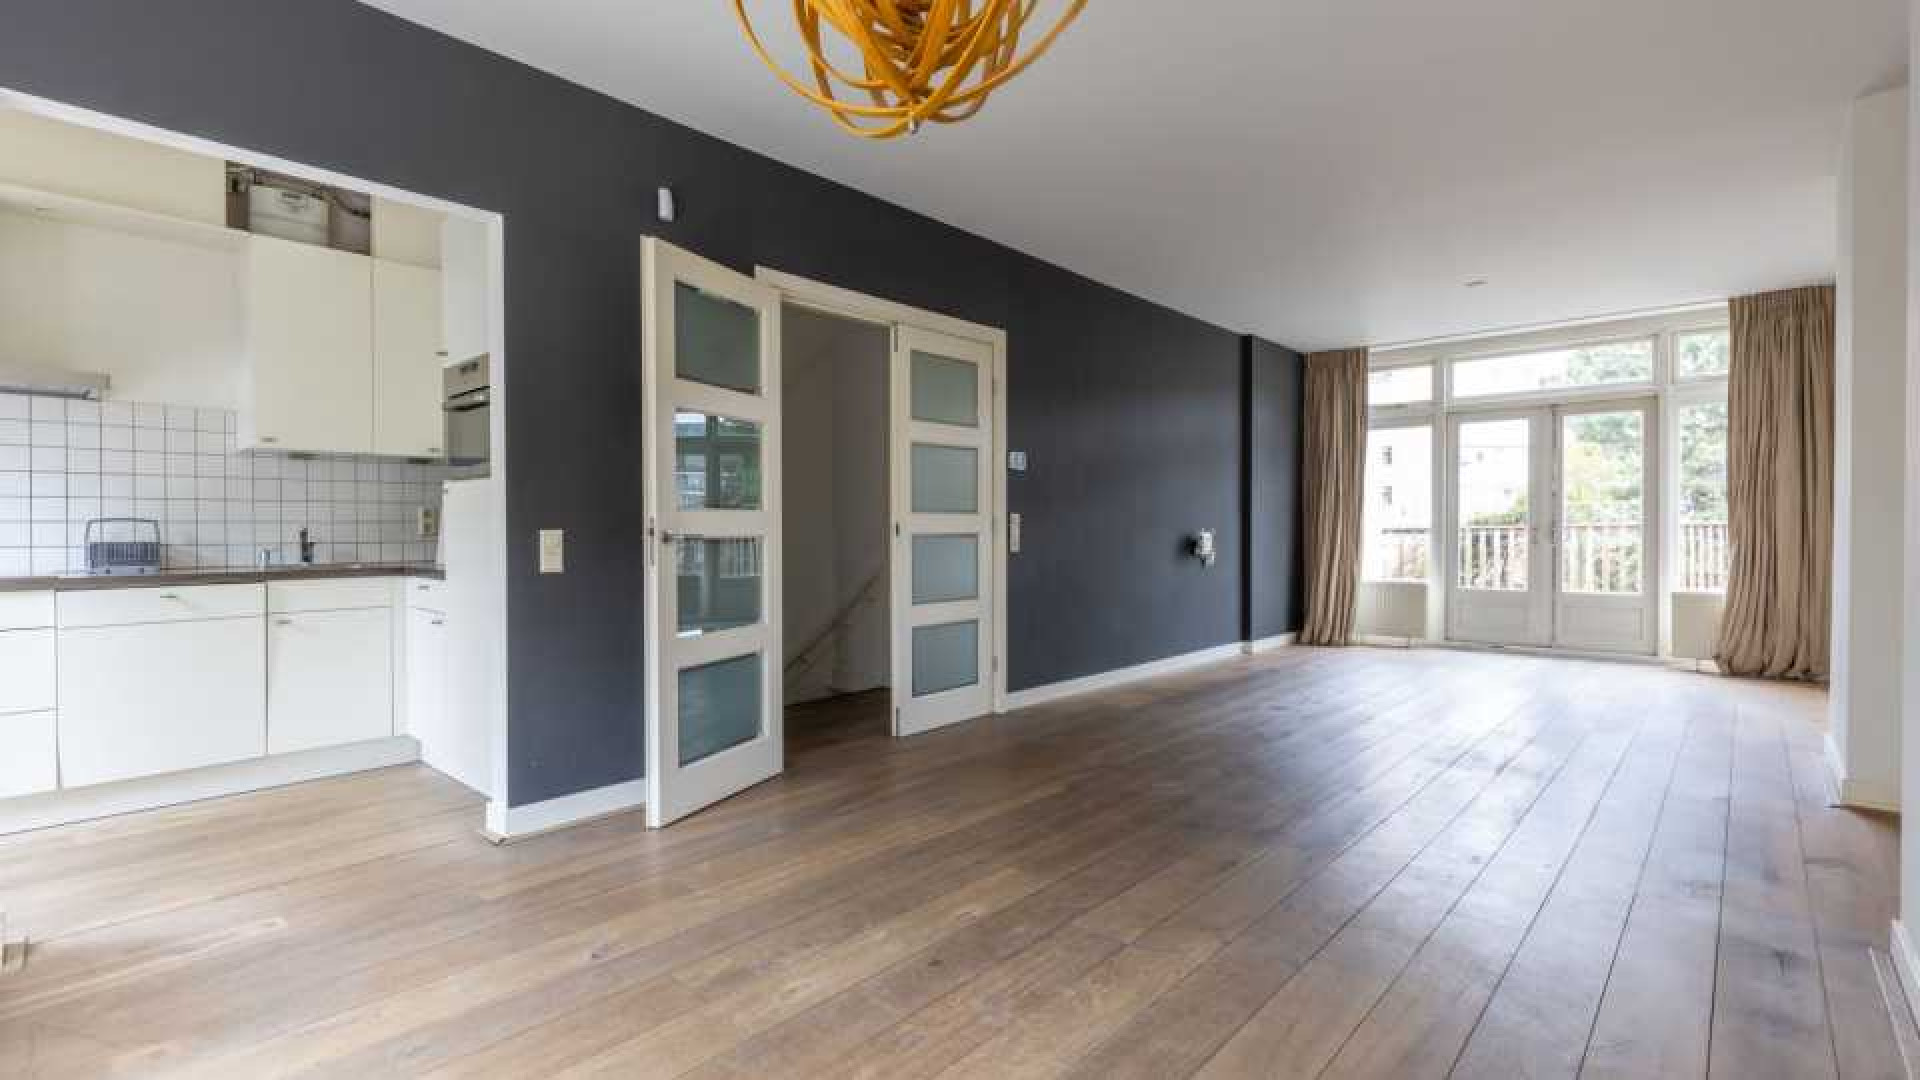 Dit is het nieuwe huur appartement van Patricia Paay in Rotterdam. Zie foto's